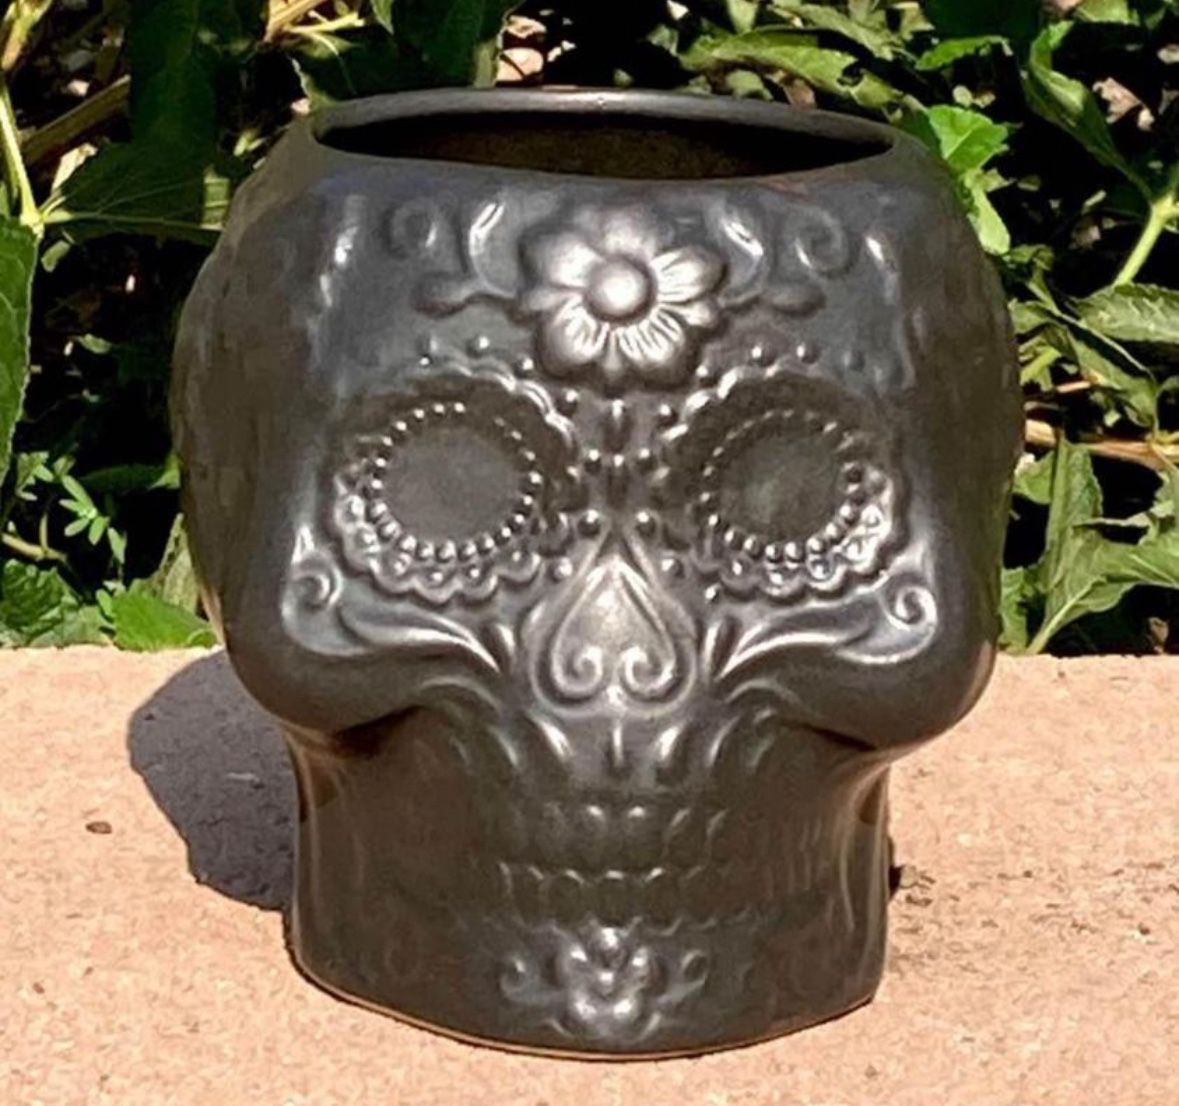 Ceramic Sugar Skull Succulent Planter Small Plant Pot Day of the Dead Decor black